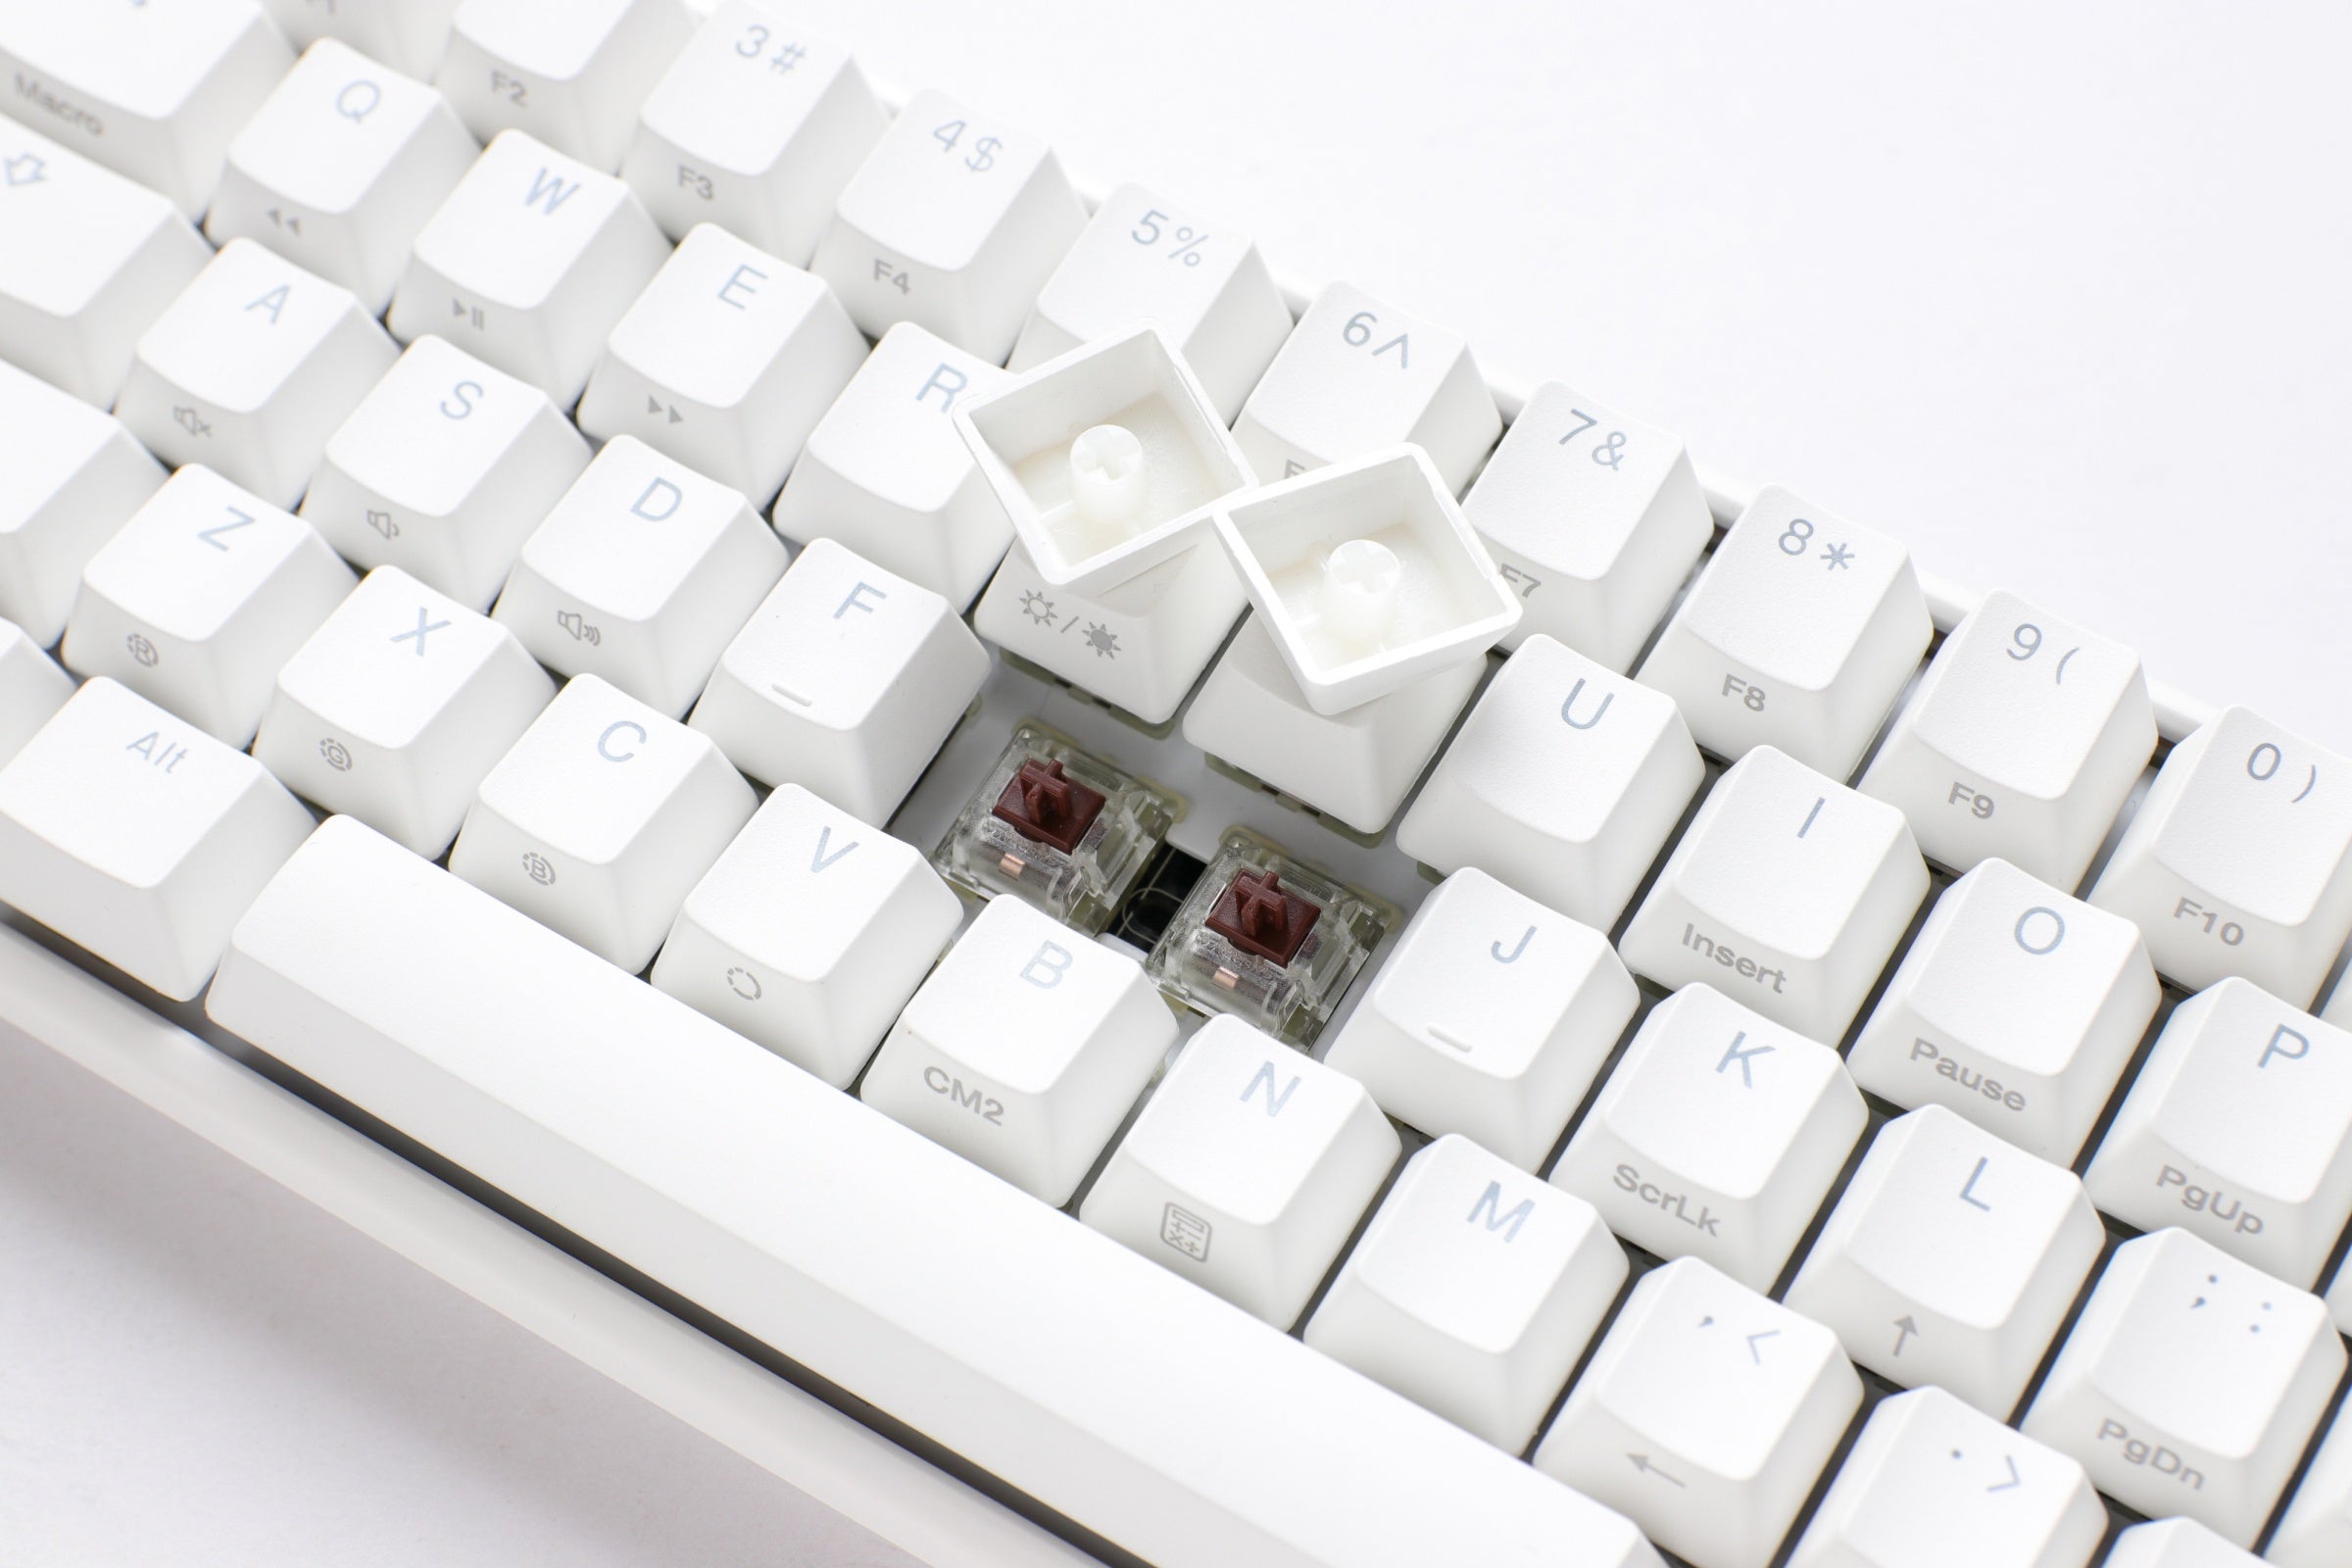 Ducky One 3 Mini Pure White 60% Hotswap RGB Mechanical Keyboard w/ Qua